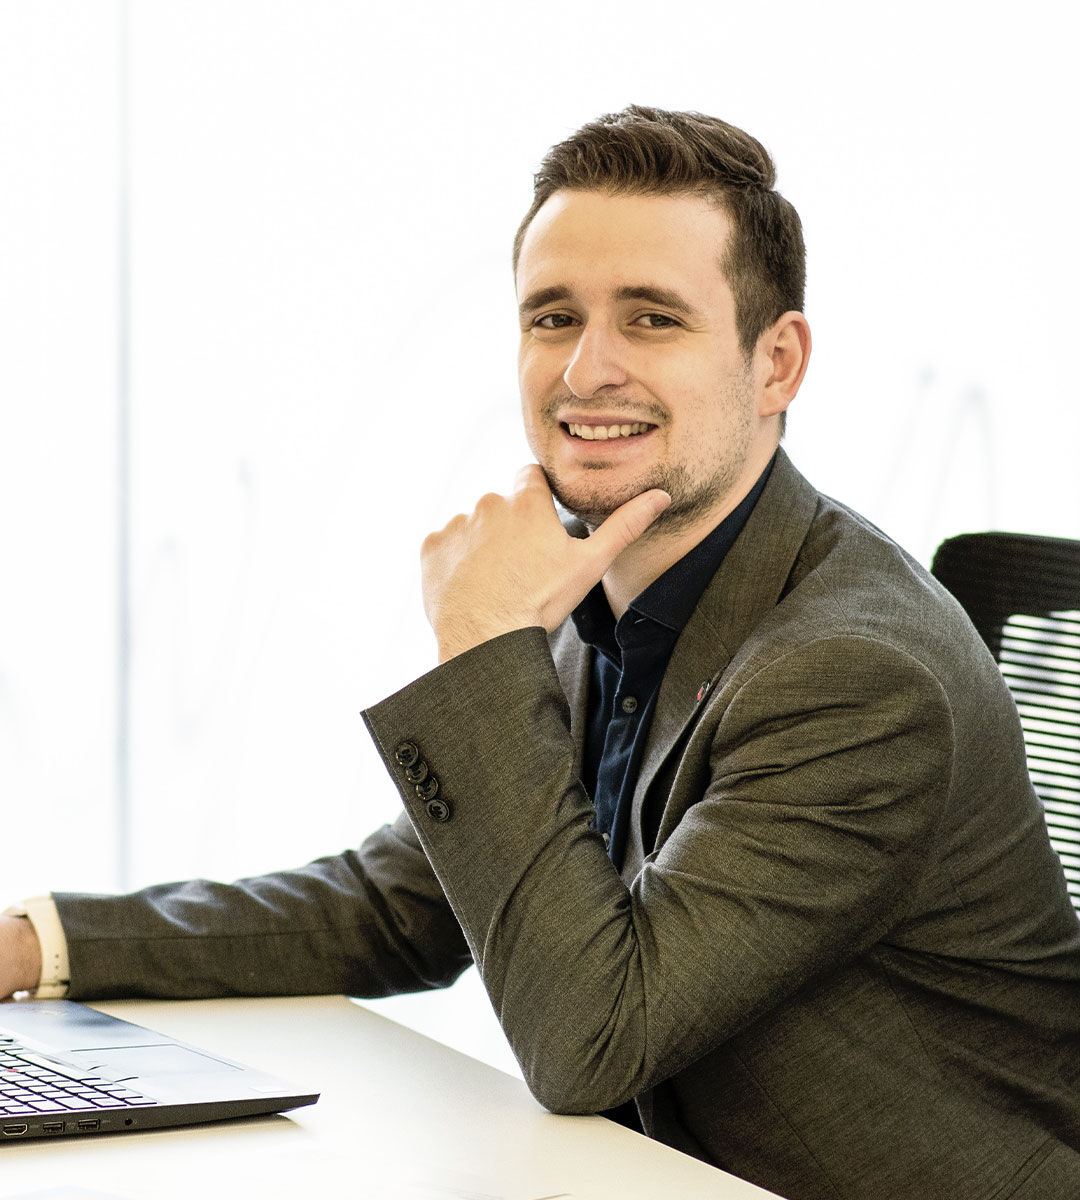 Un jeune homme posé avec un sourire charmeur, habillé d'un blazer gris élégant, pose à son bureau de travail.